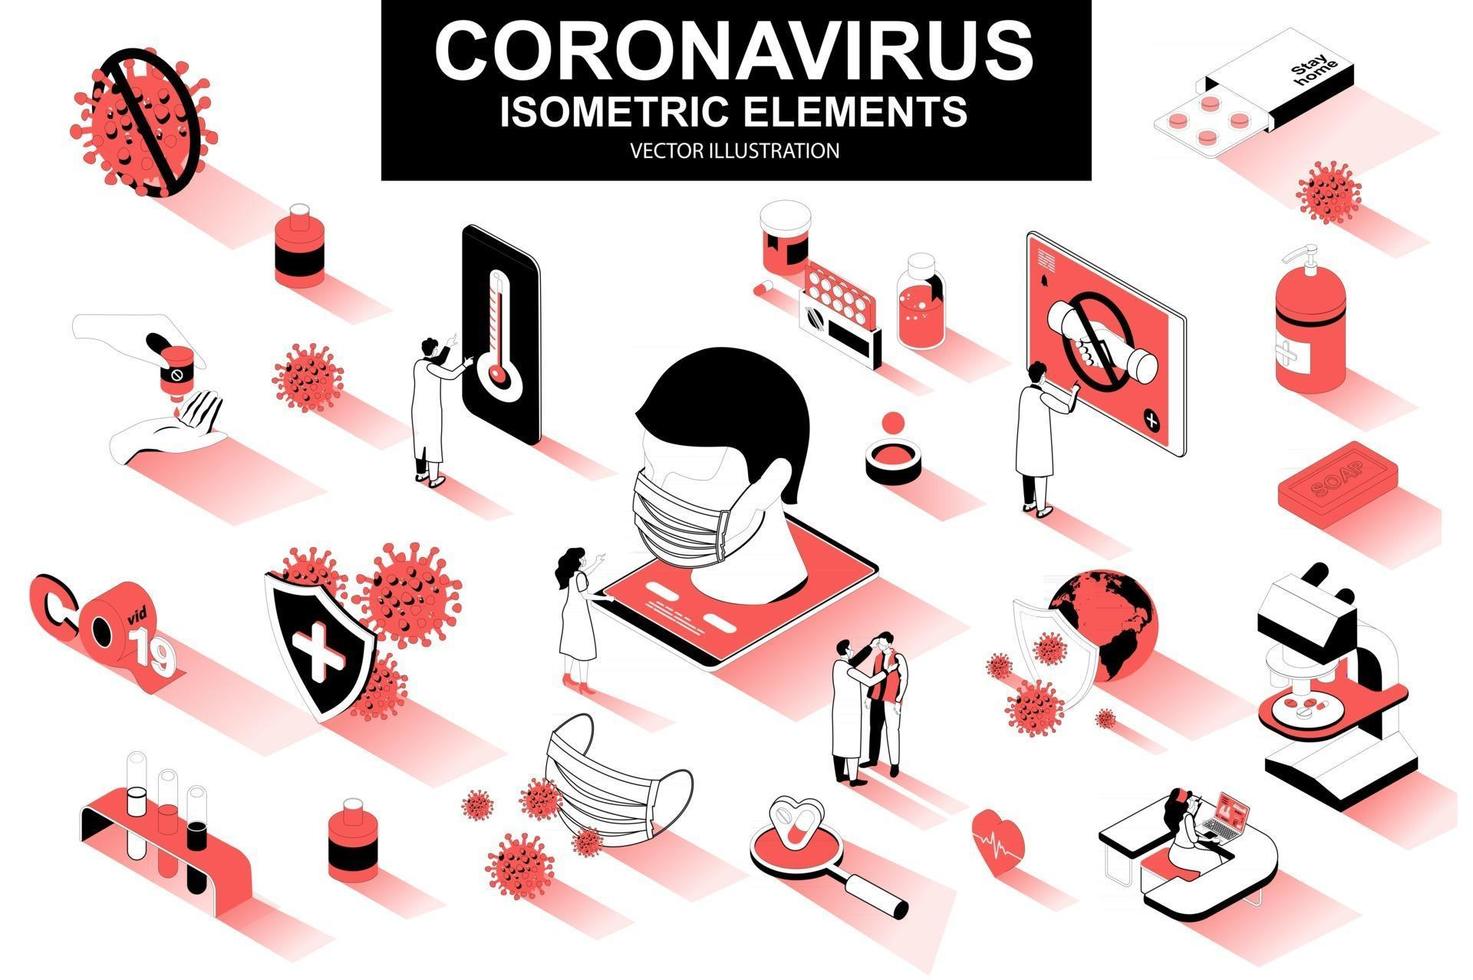 Coronavirus bundle of isometric elements vector